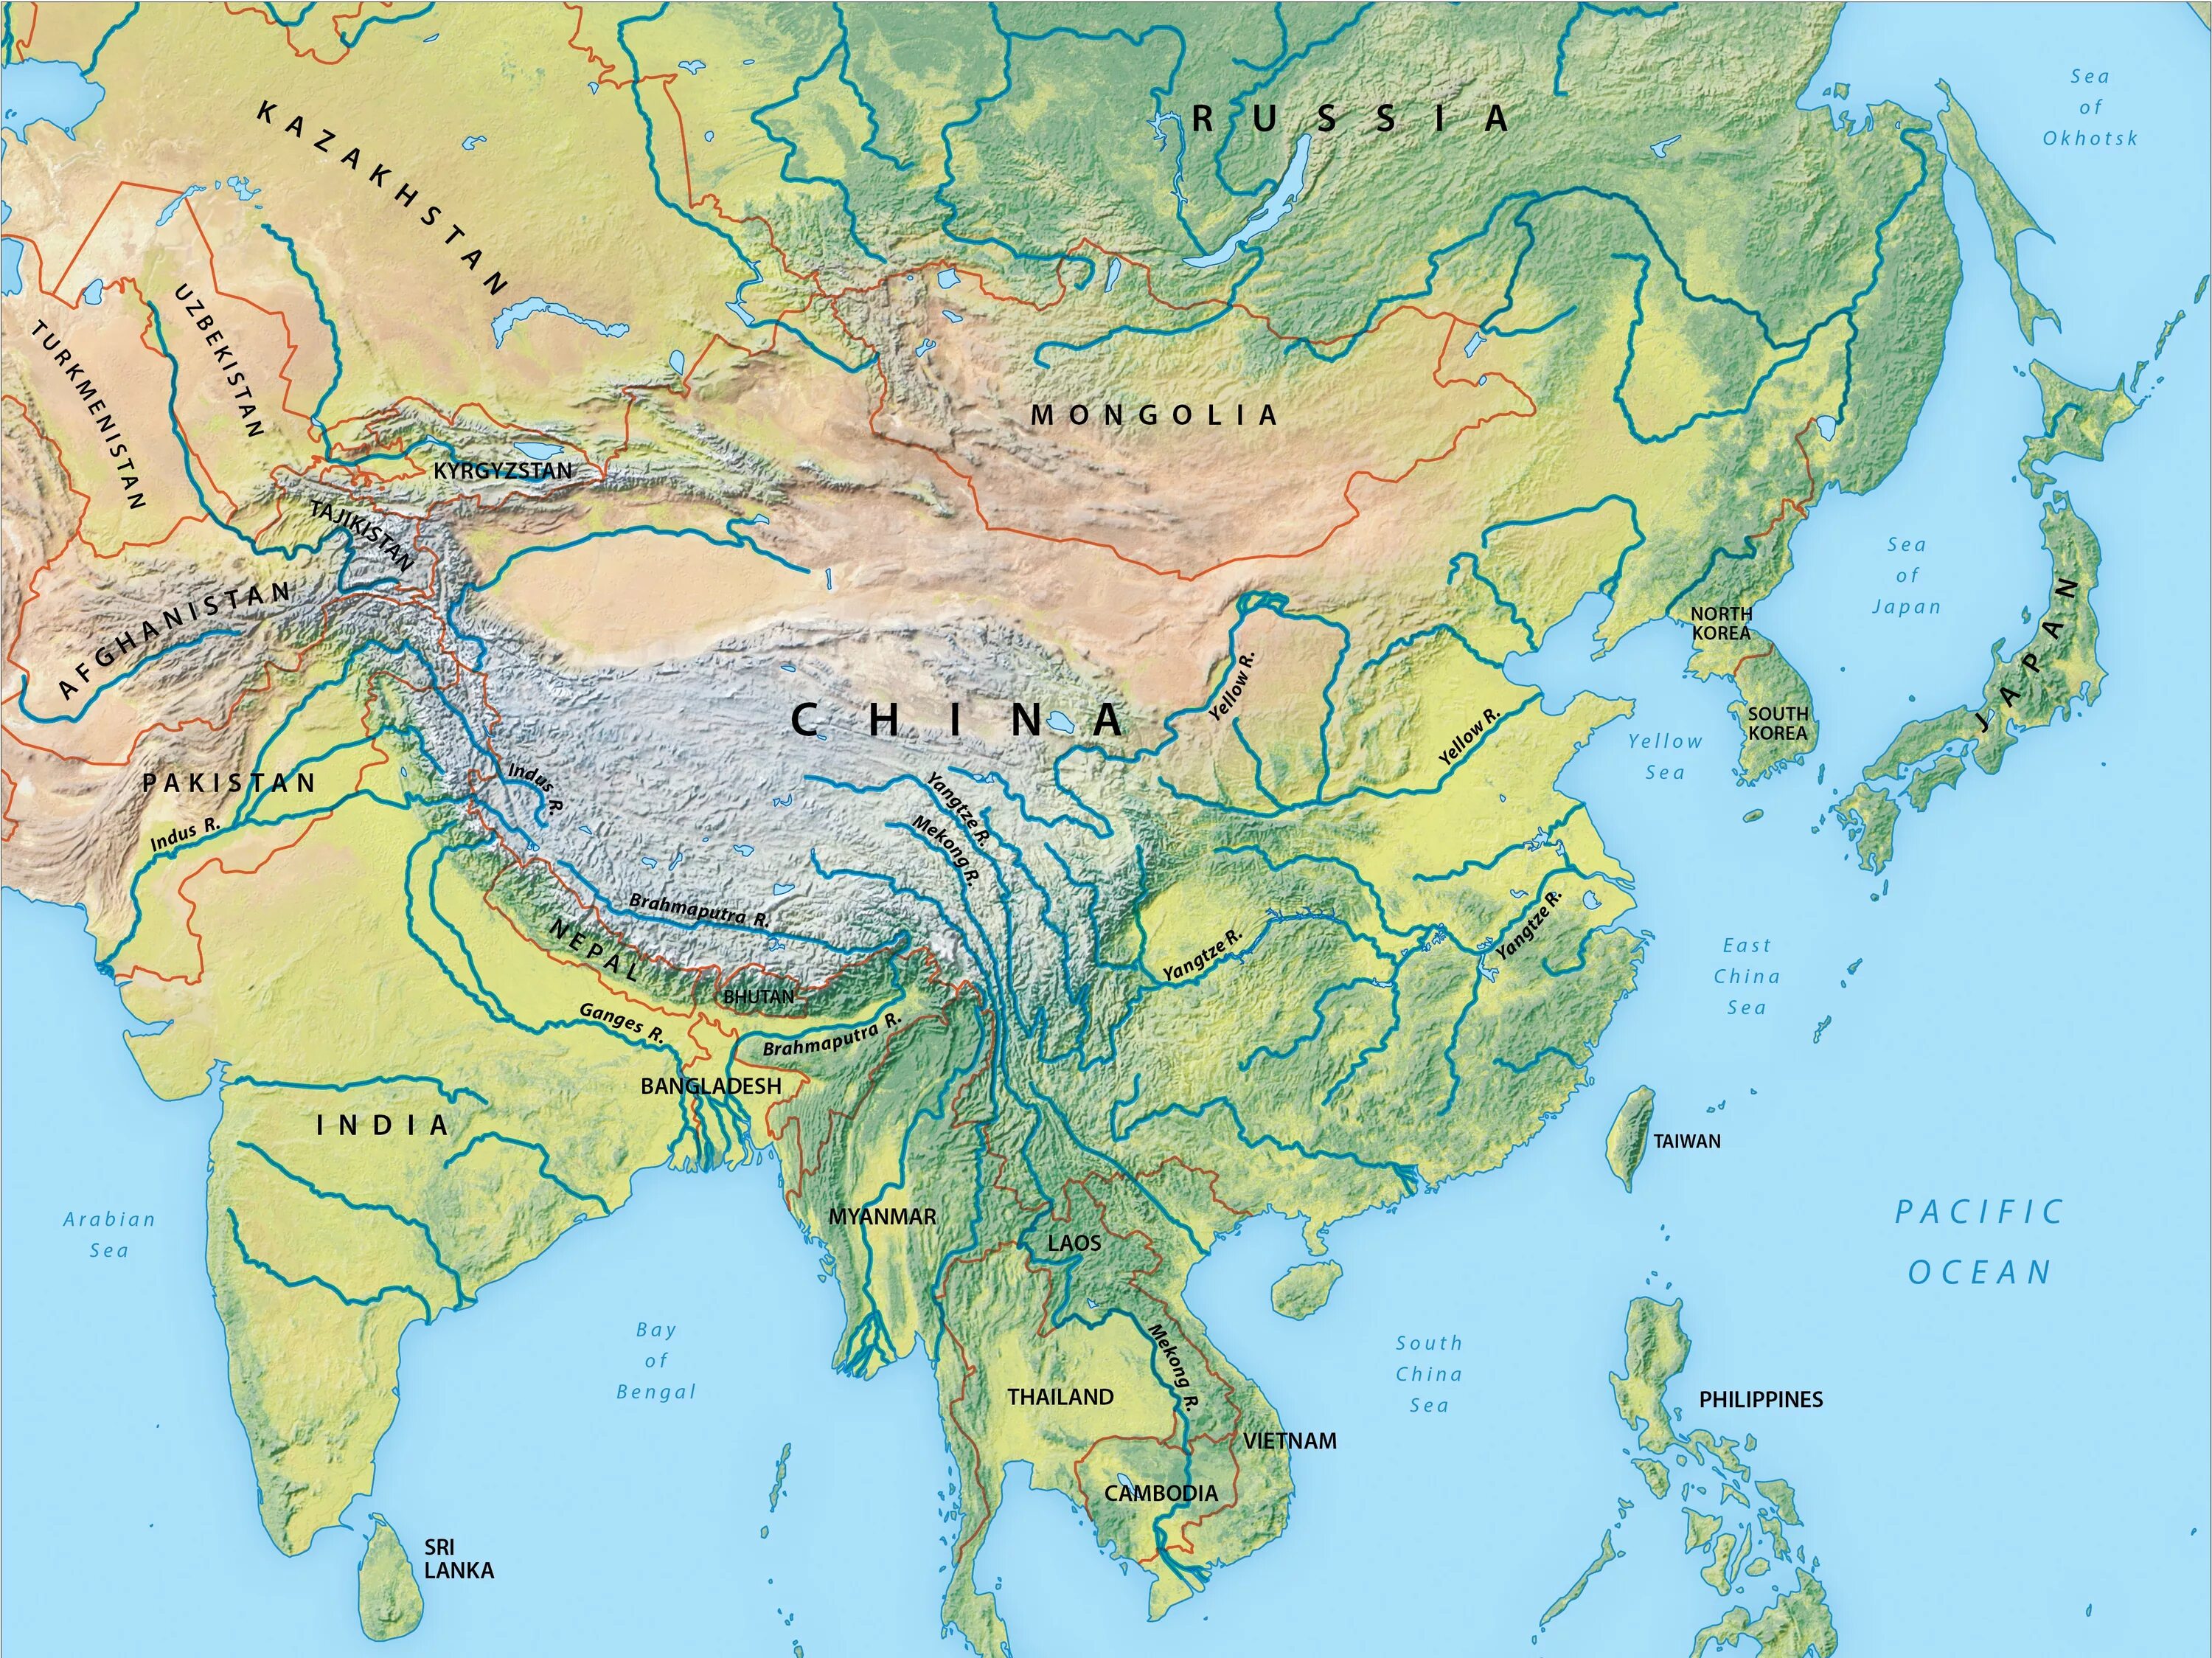 Реки и озера азии. Реки Азии на карте. Крупнейшие реки Азии на карте. Зарубежная Азия реки и озера на карте. Крупные реки Азии на карте.